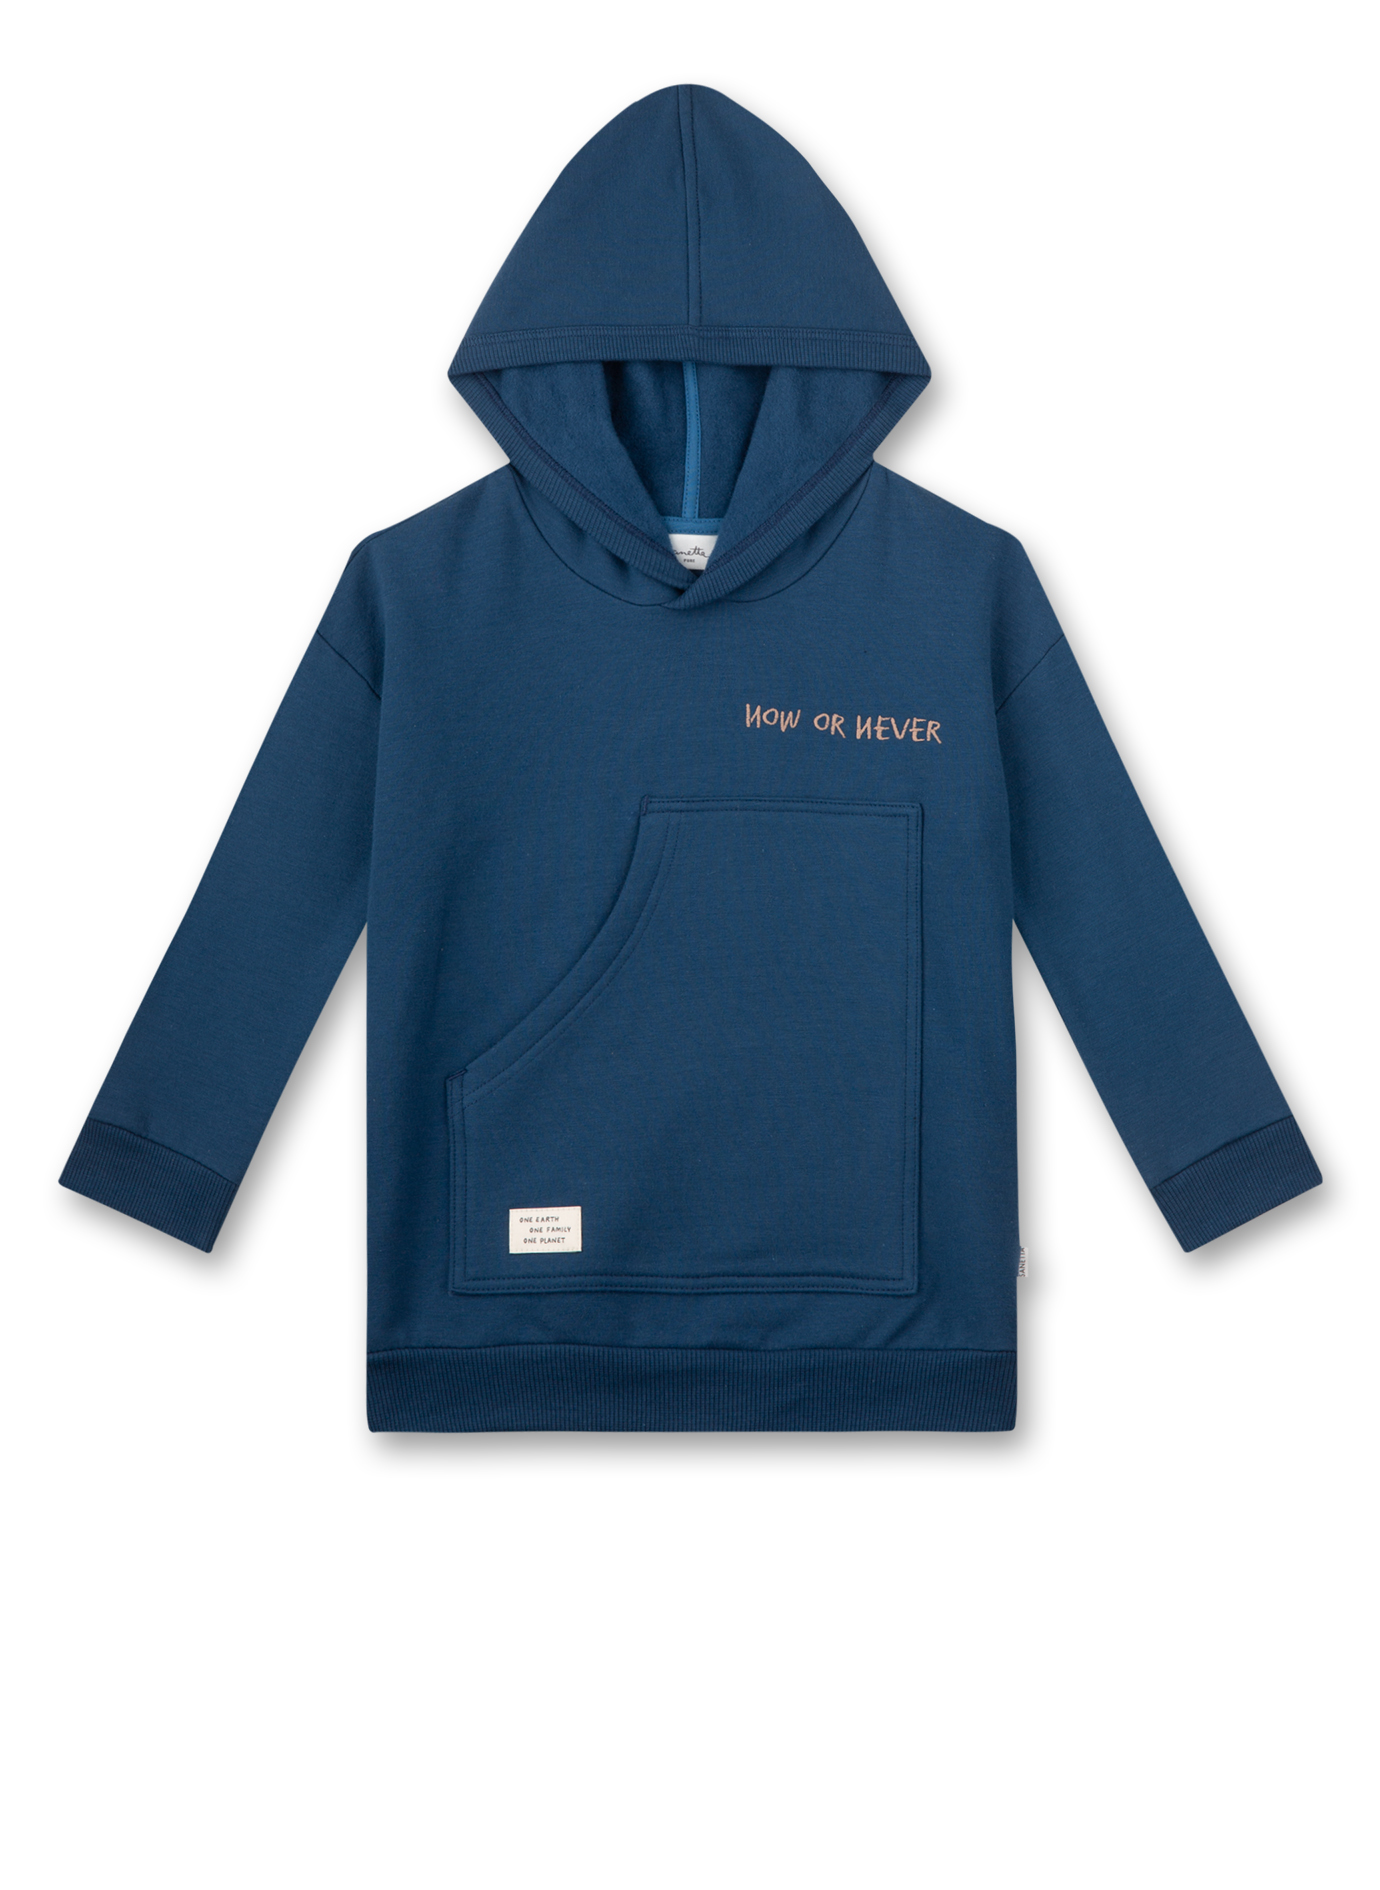 Jungen-Sweatshirt mit Kapuze Blau